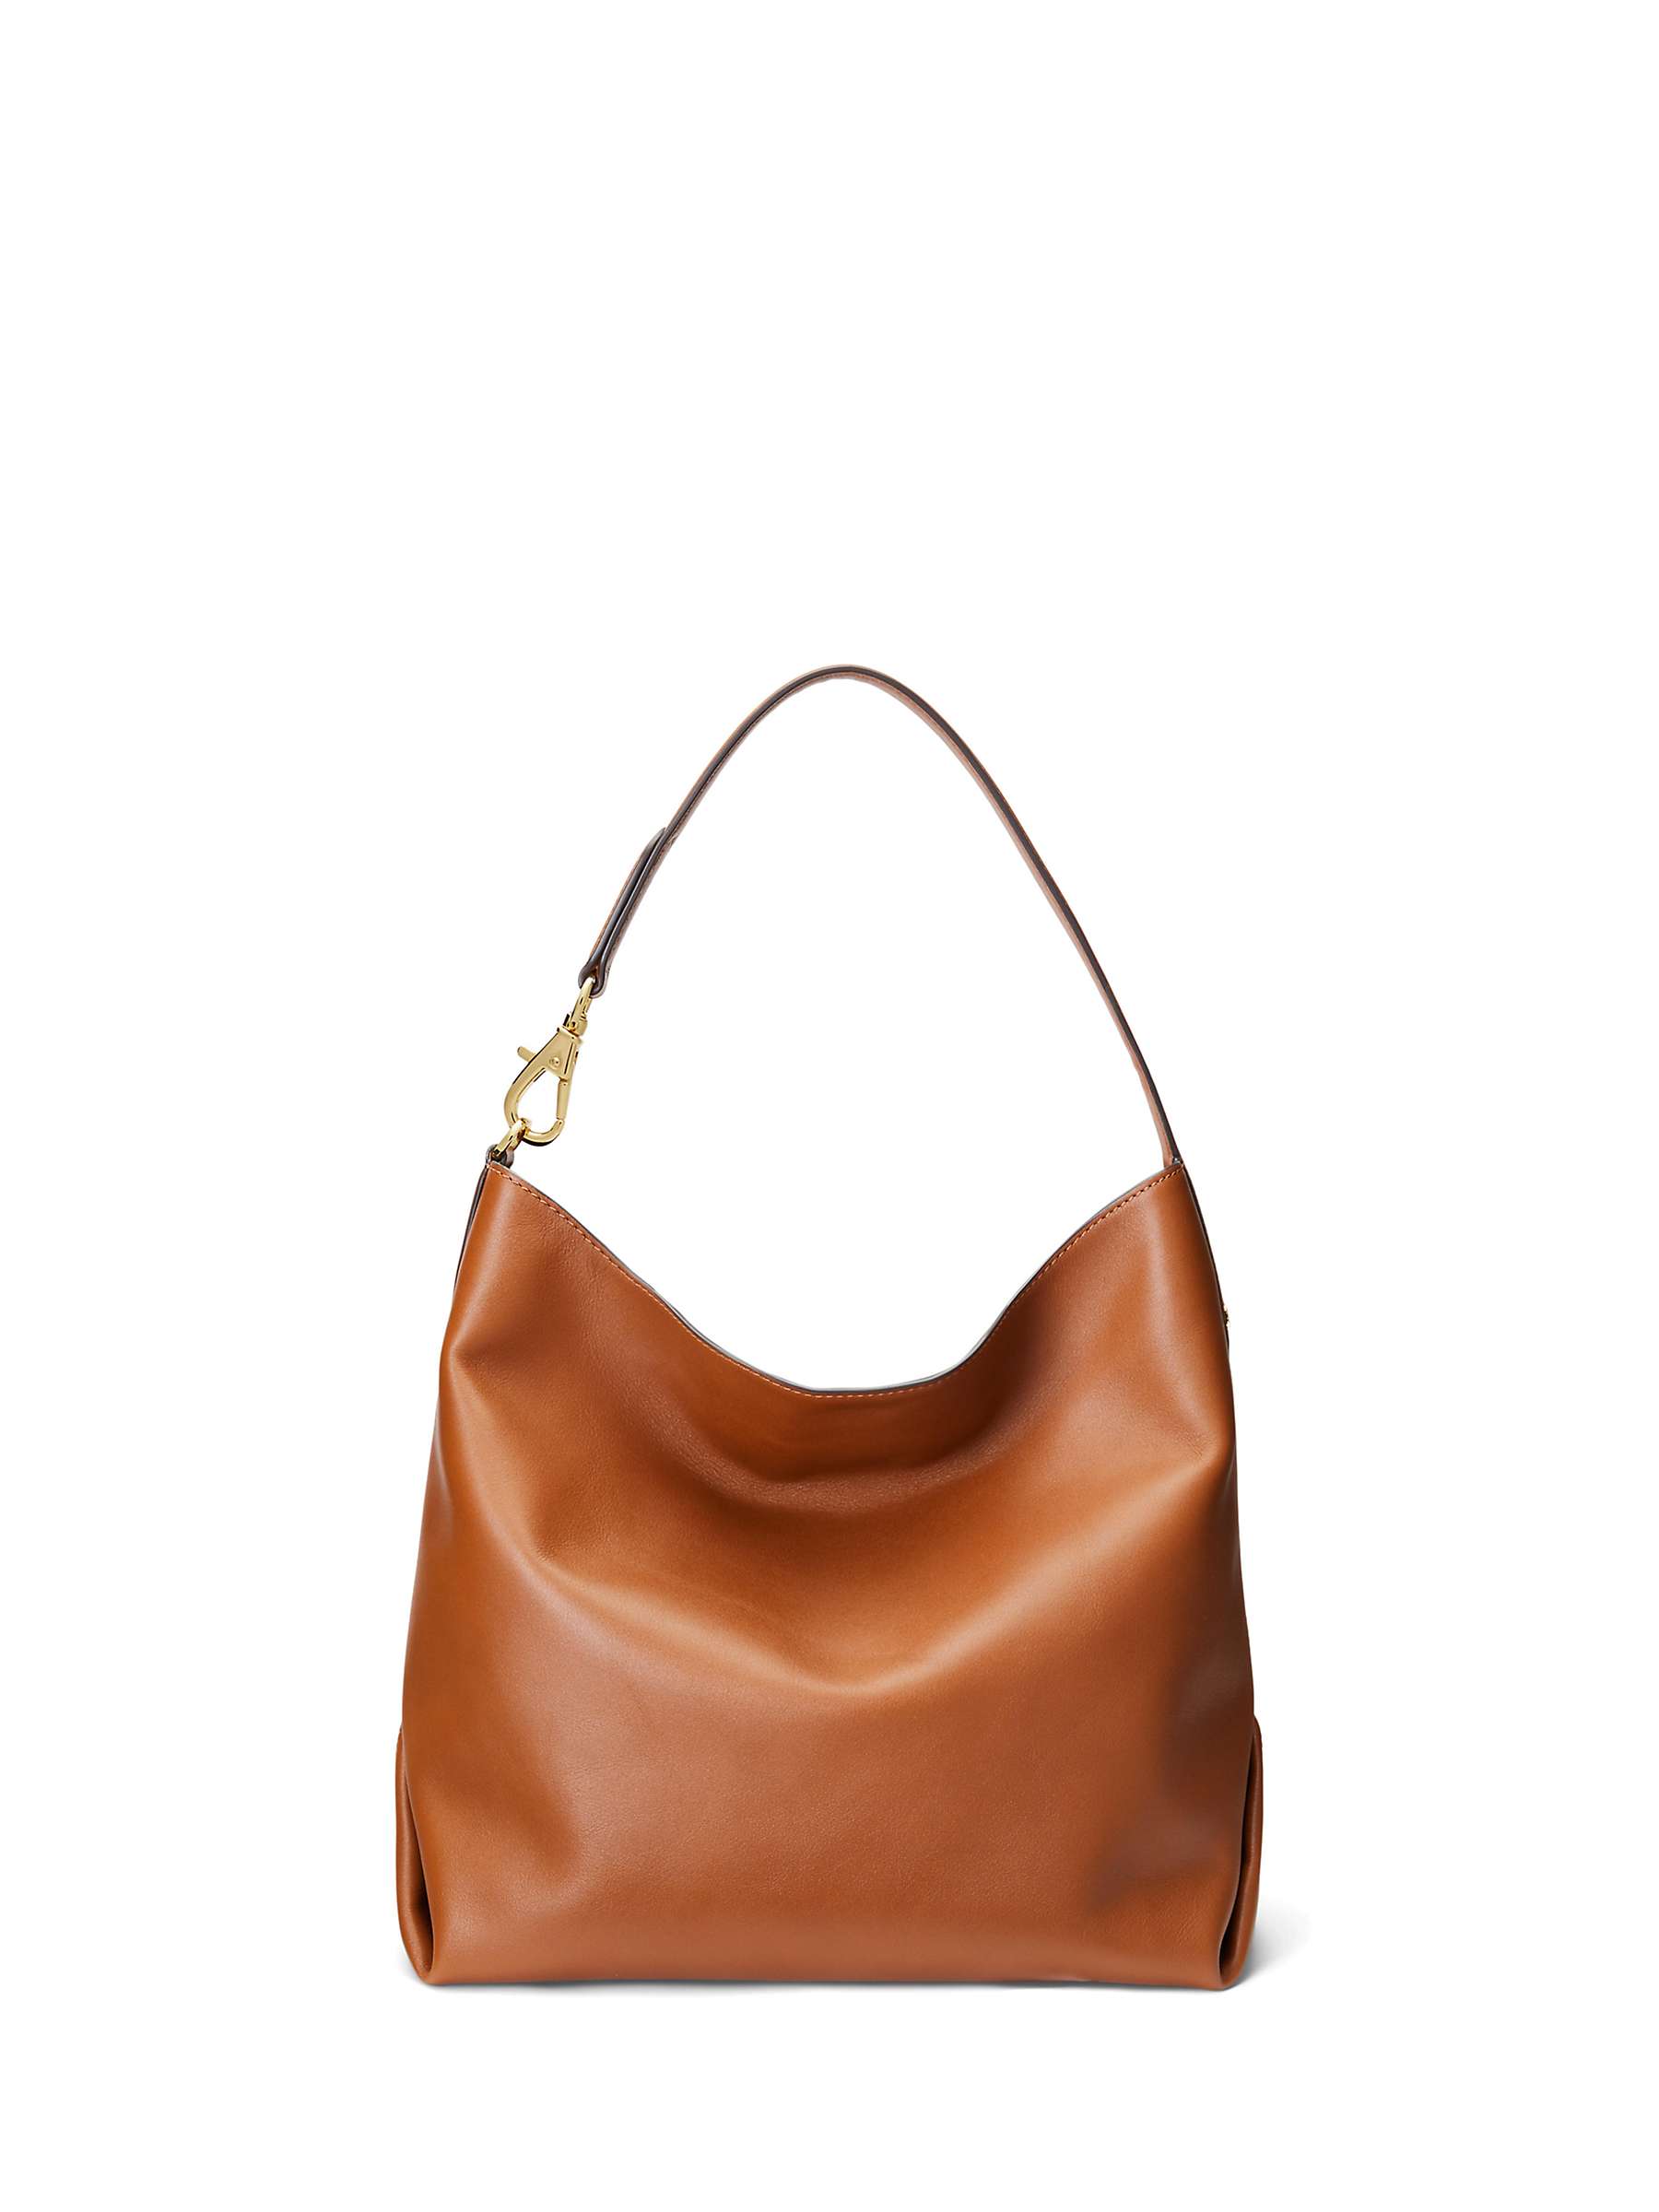 Buy Lauren Ralph Lauren Kassie Large Leather Shoulder Bag Online at johnlewis.com